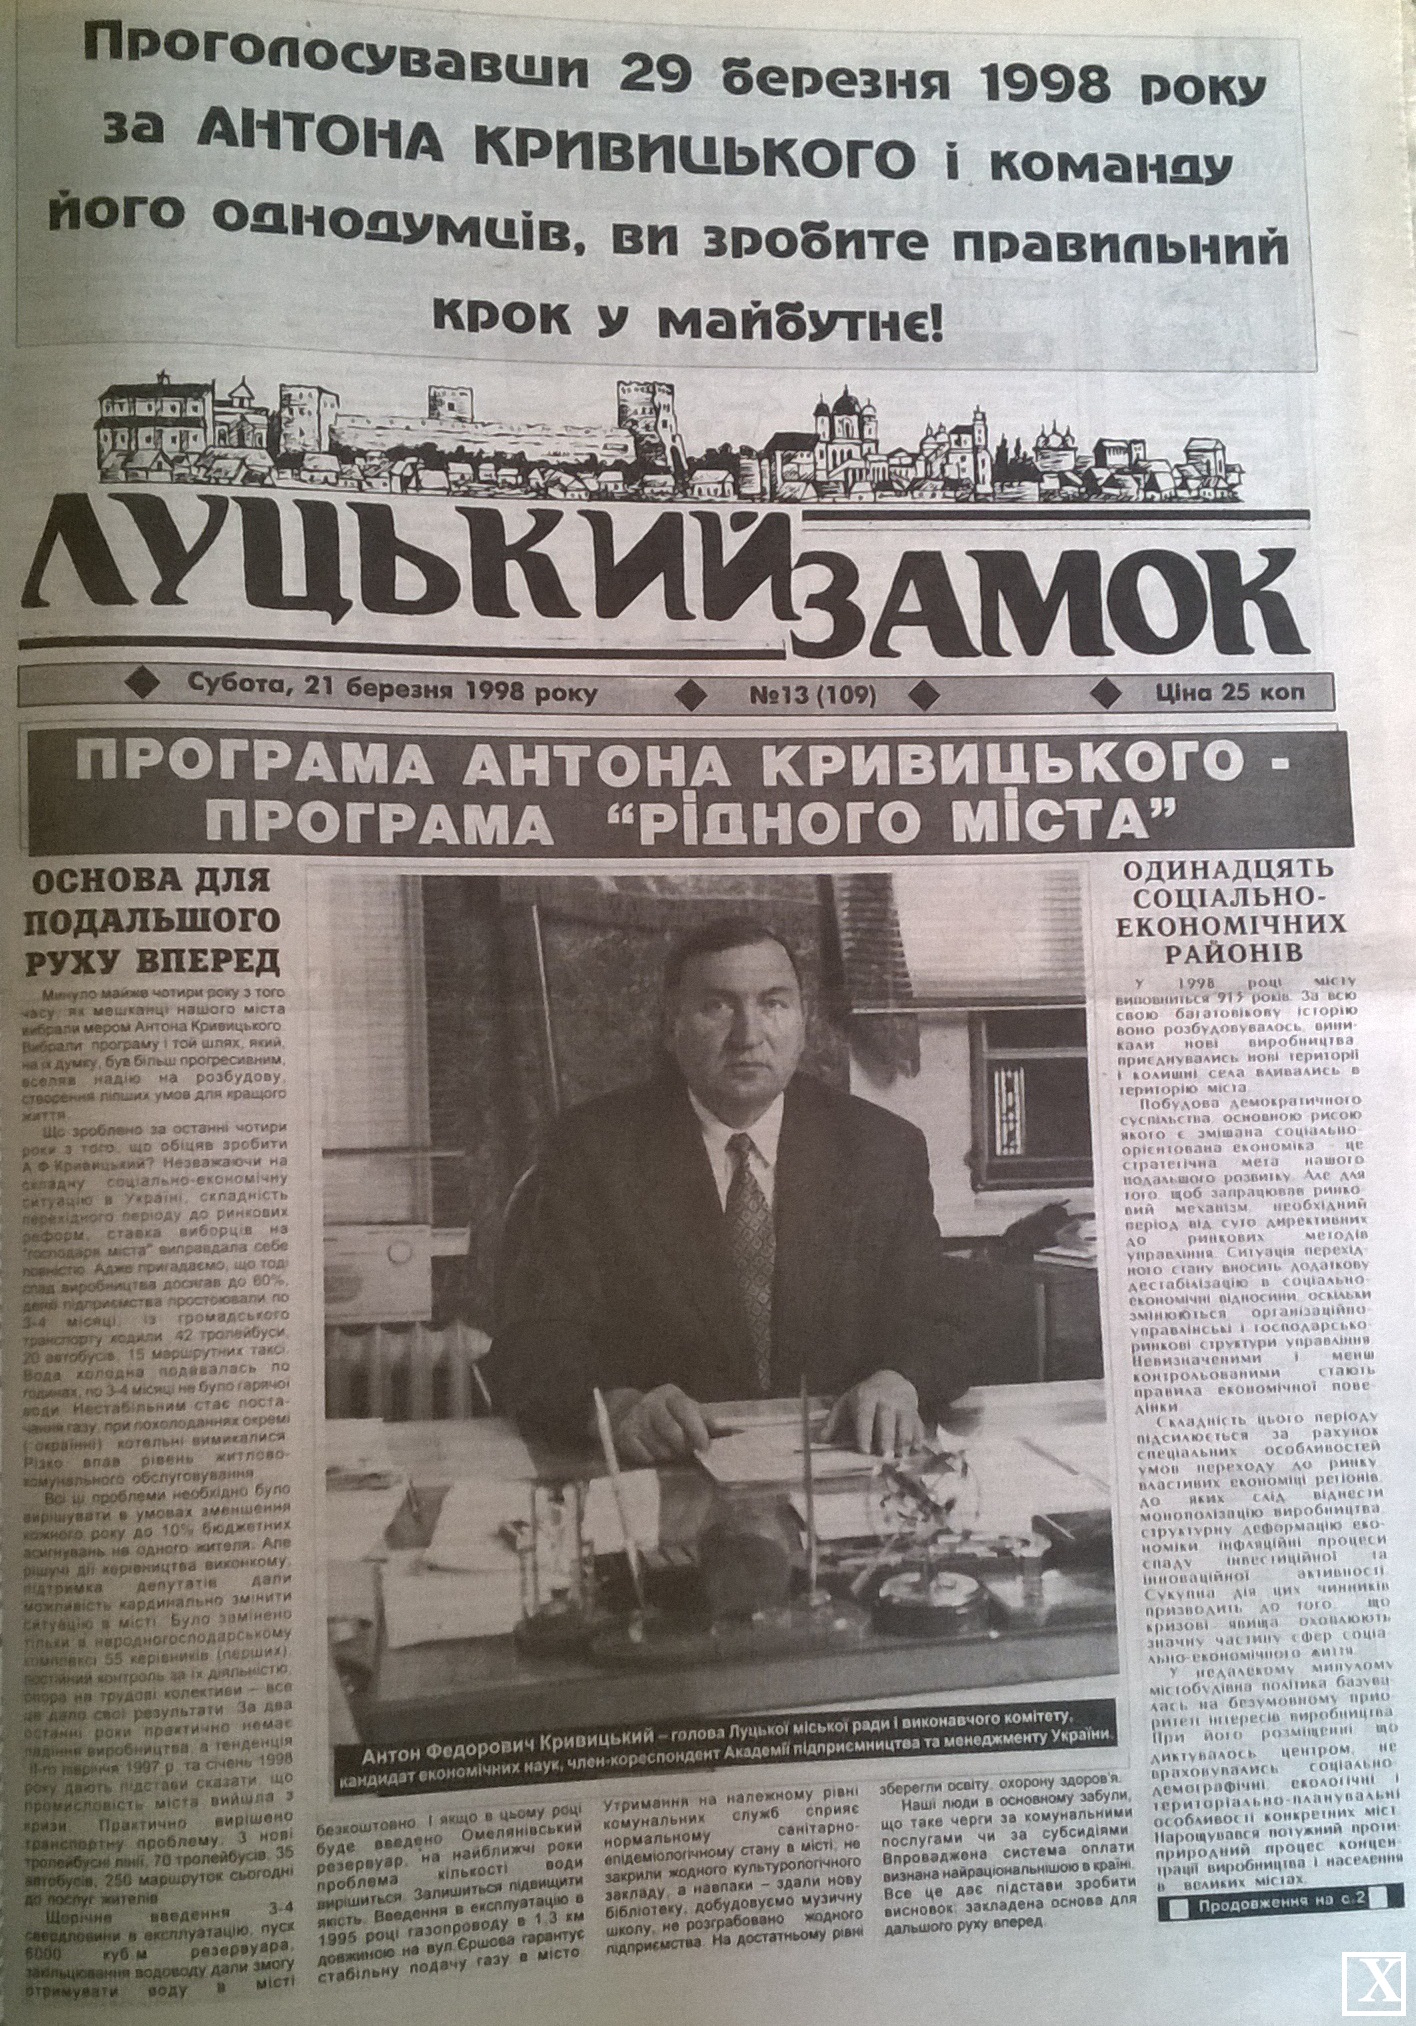 Перша шпальта комунальної газети «Луцький замок», яка фінансується з міського бюджету, у 1998 році нагадувала агітаційну газету Кривицького